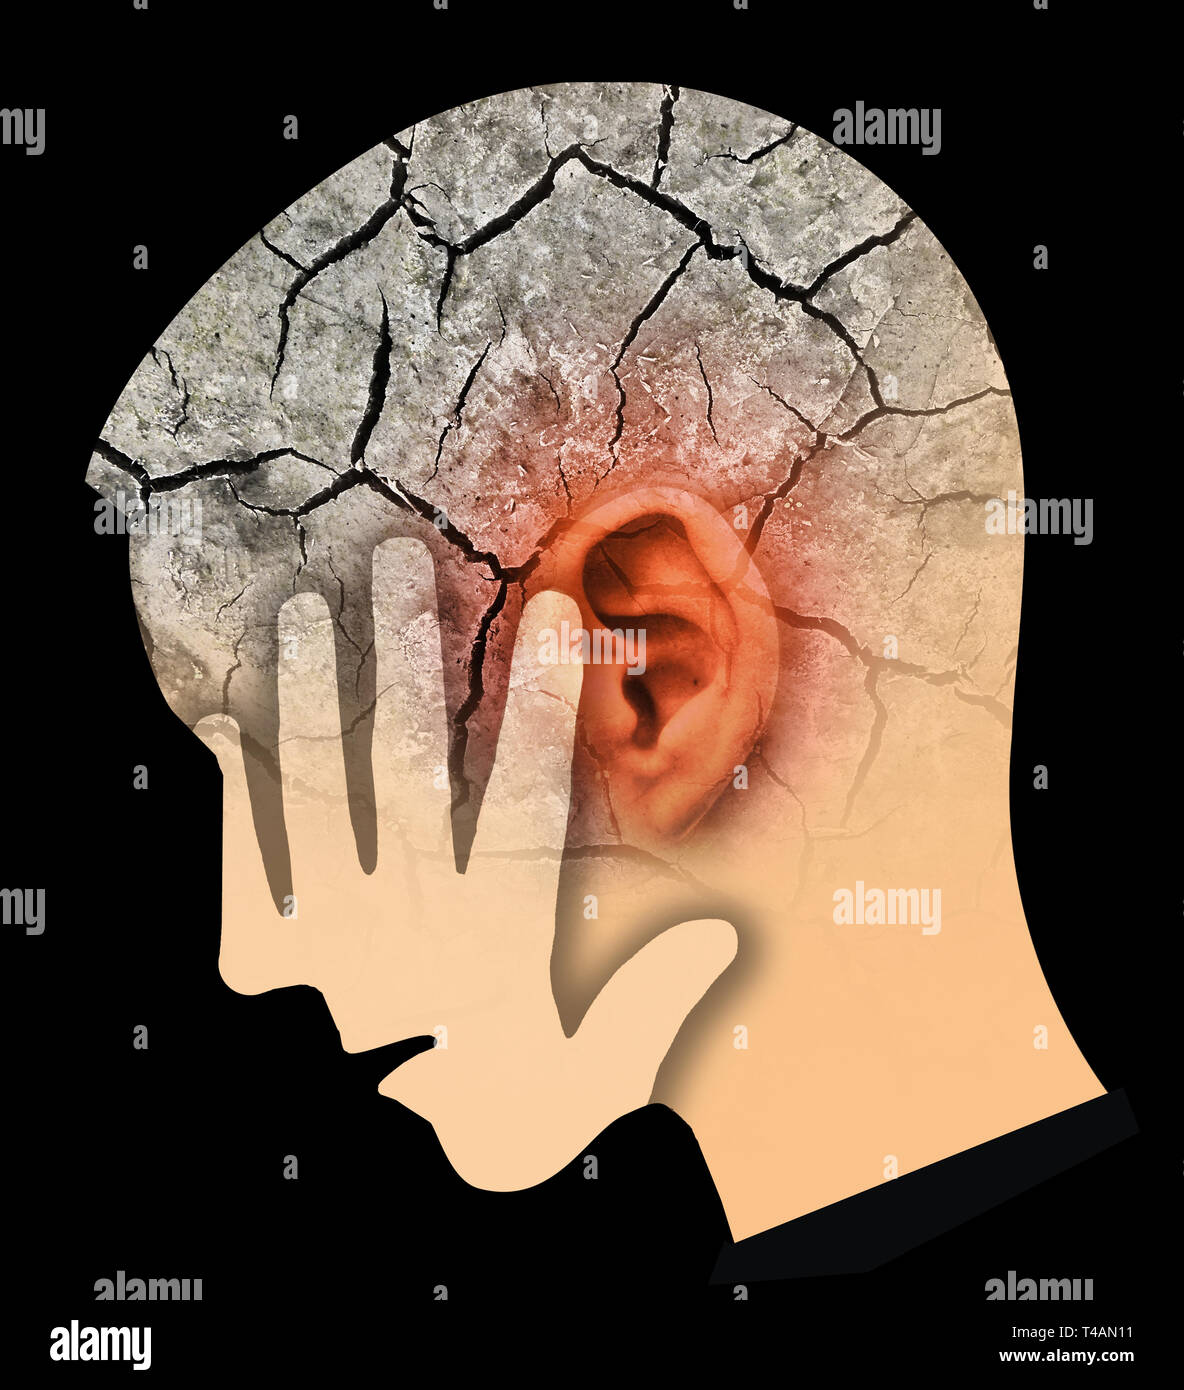 Hombre con Big red y cabeza de oreja rajada, simbolizando el tinnitus y problemas del oído. Cabeza masculina de perfil estilizado. Fotomontaje en seco con tierra agrietada. Foto de stock